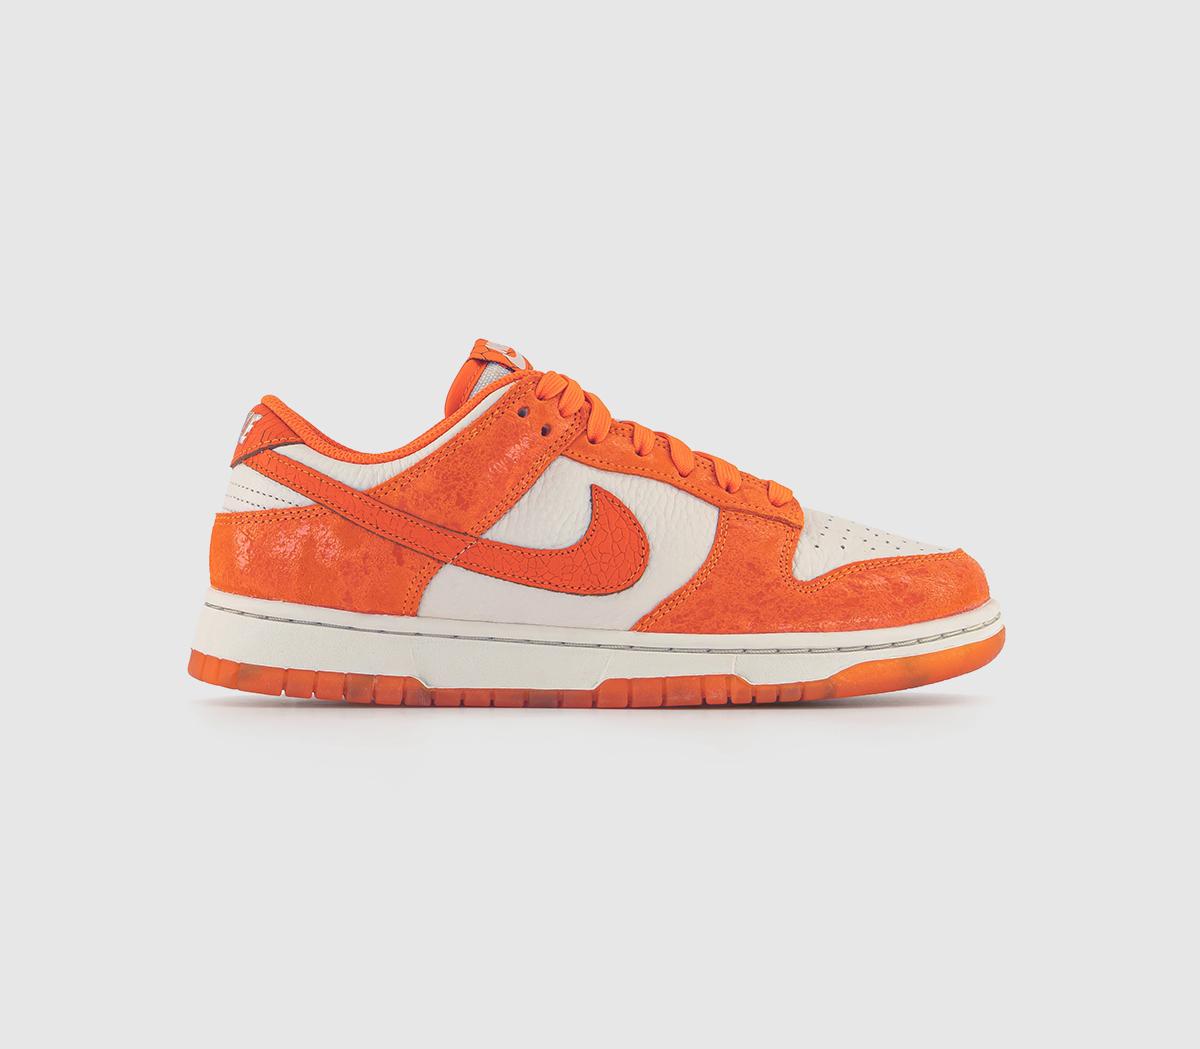 Nike Mens Dunk Low Trainers Light Bone Saftey Orange Laser Orange Total Orange In Natural, 9